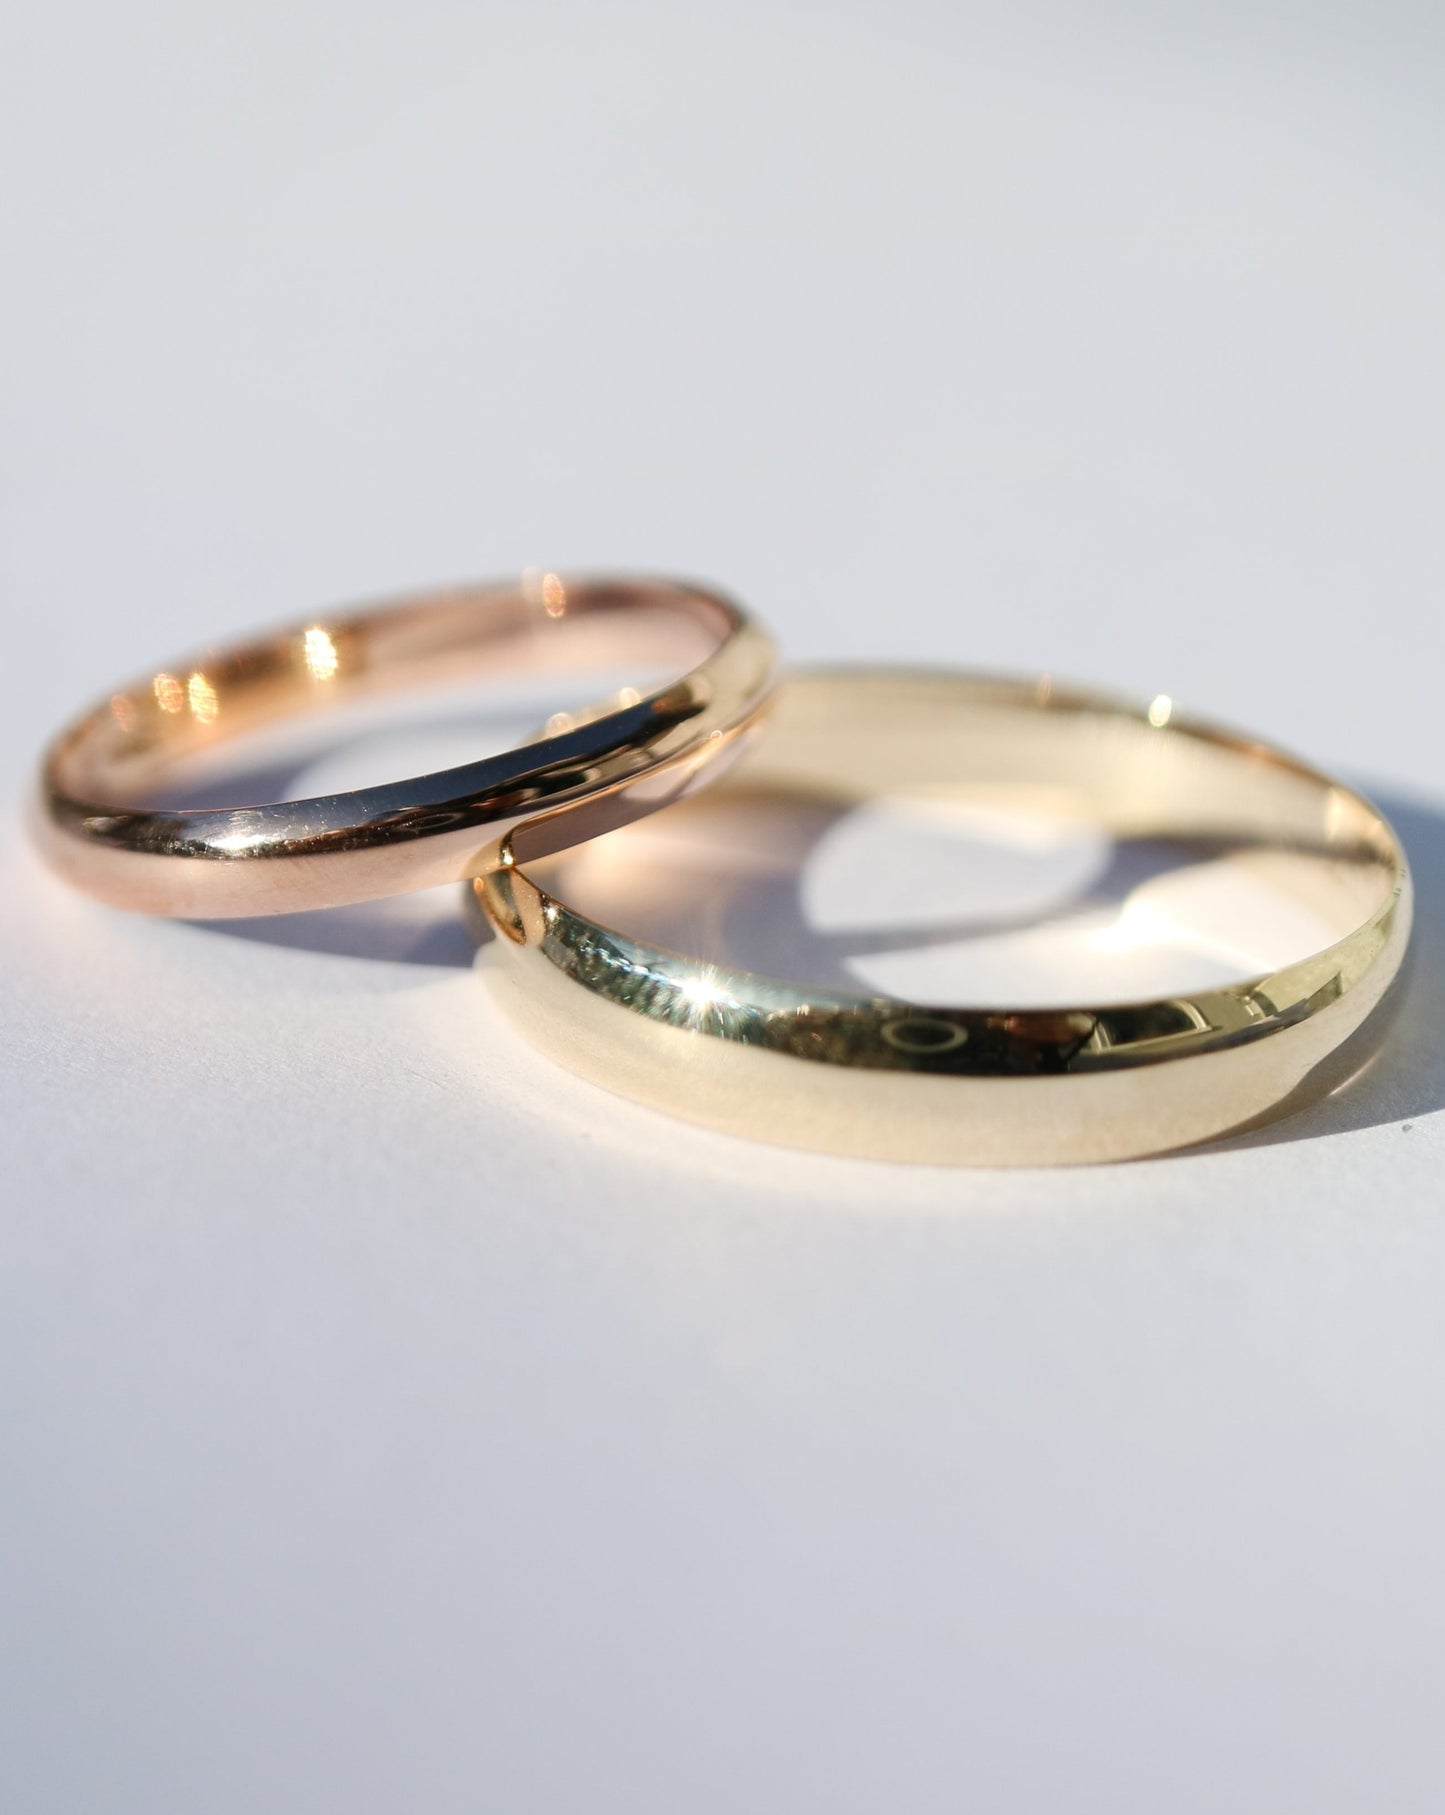 9ct gold men's wedding rings